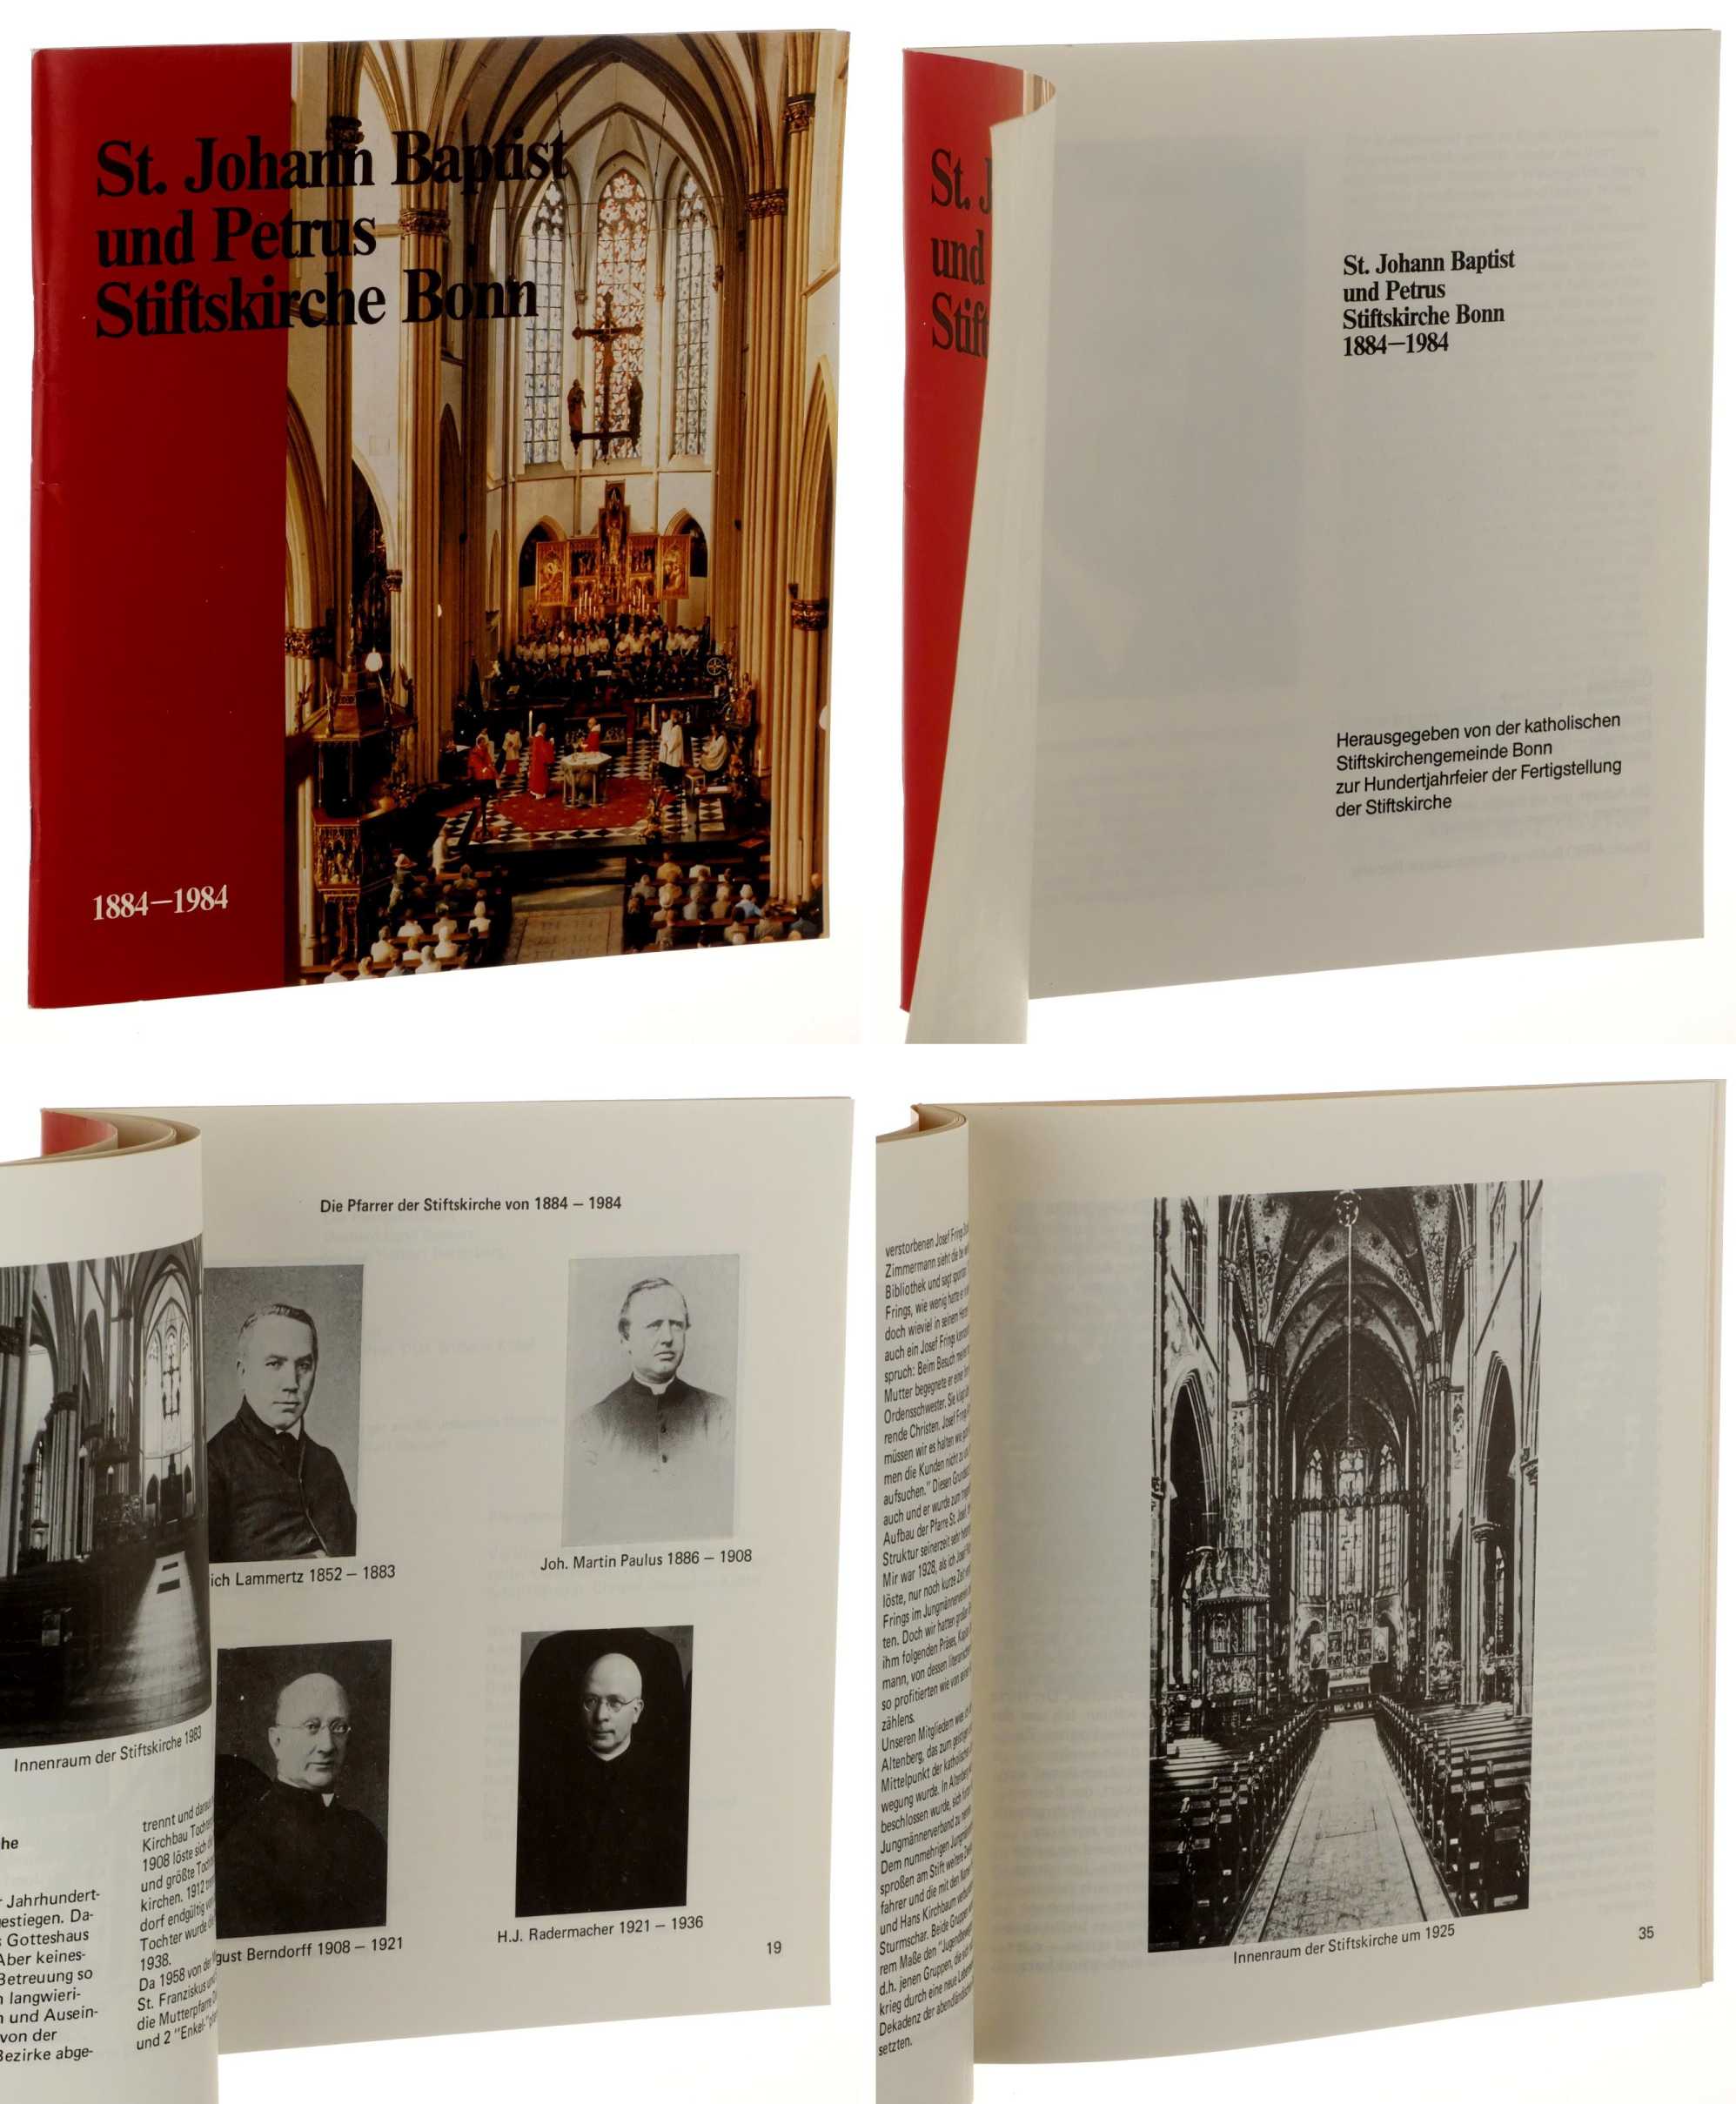   Sankt Johann Baptist und Petrus Stiftskirche Bonn. 1884-1984. Zur Hundertjahrfeier der Fertigstellung der Stiftskirche. 